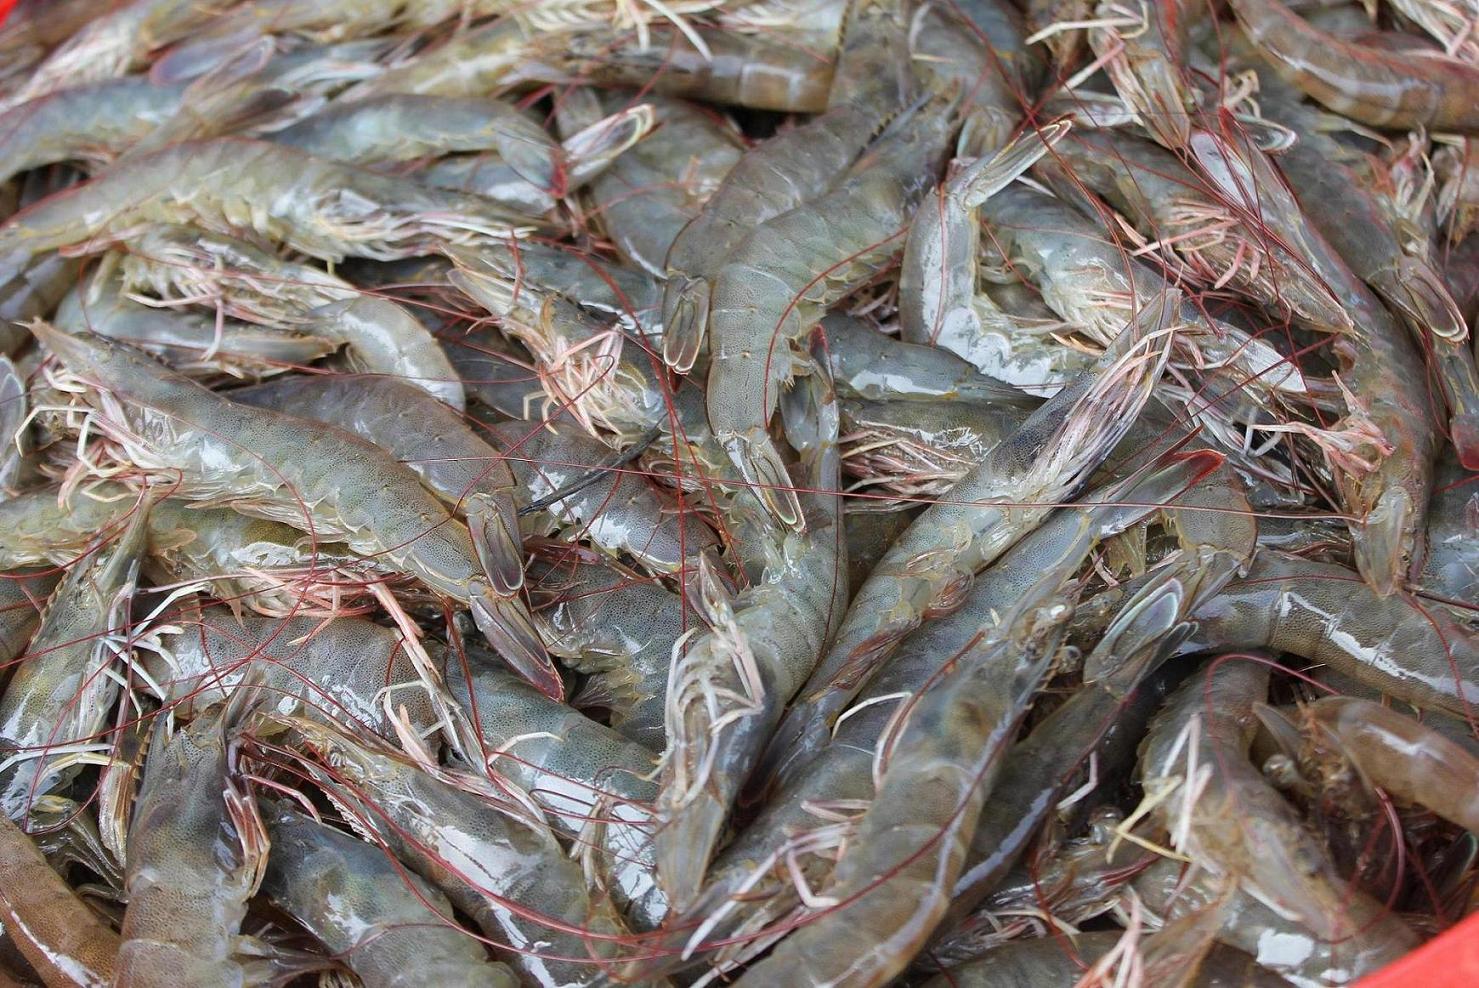 Historic drought ravages Vietnam's shrimp farms